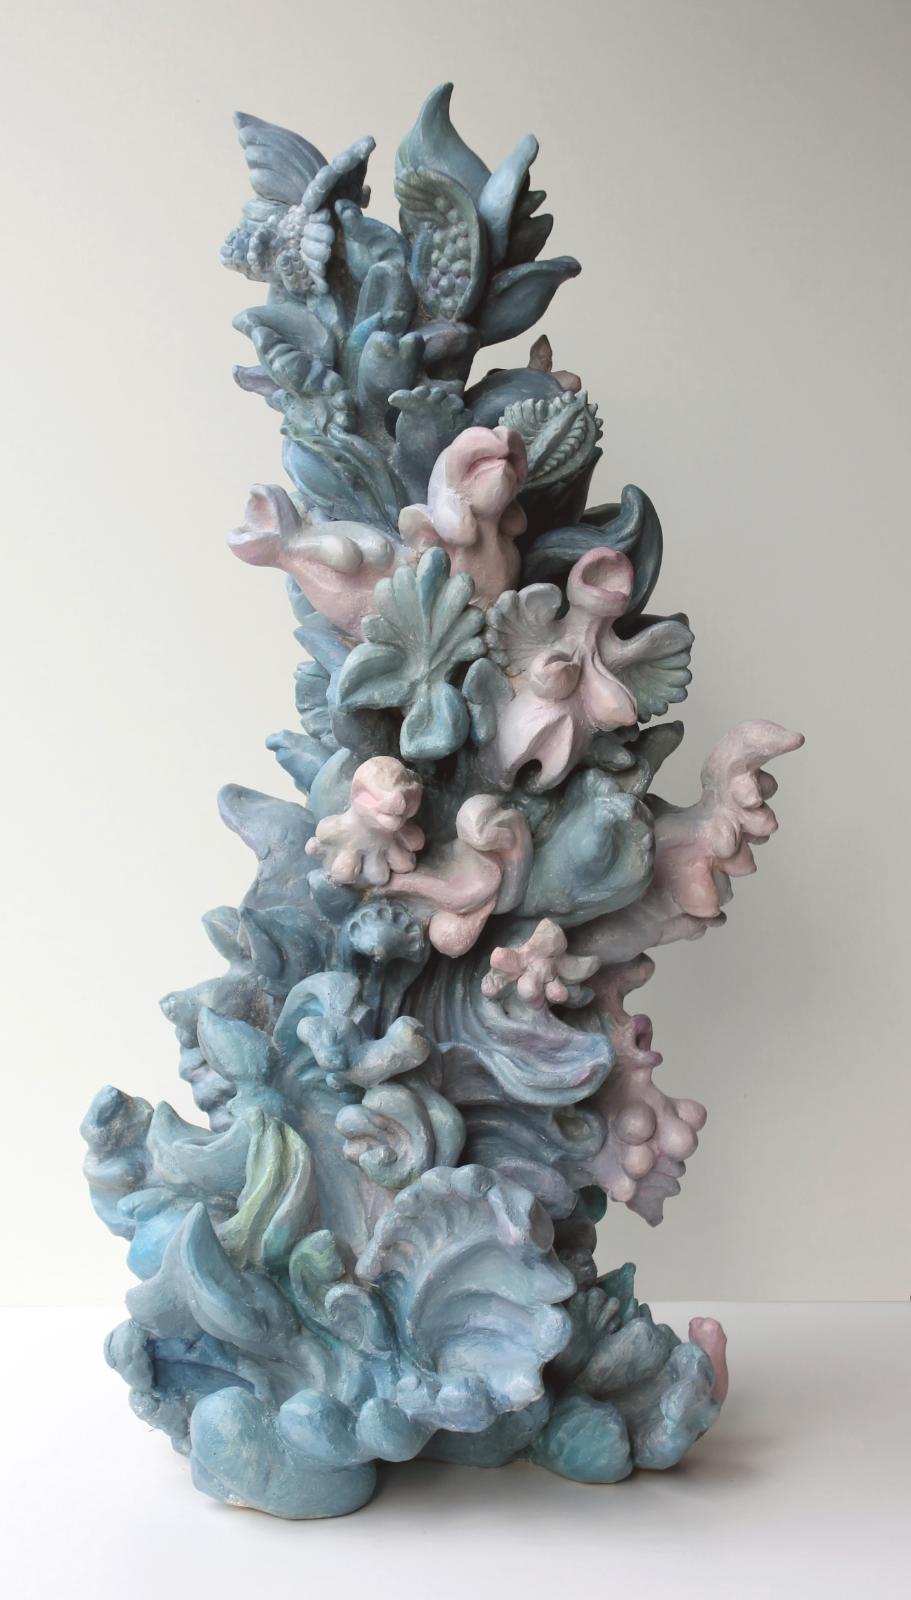 Miriam Lenk, Blaue Pflanze, 2013, Keramik, 71 cm x 35 cm x 33 cm, Preis auf Anfrage